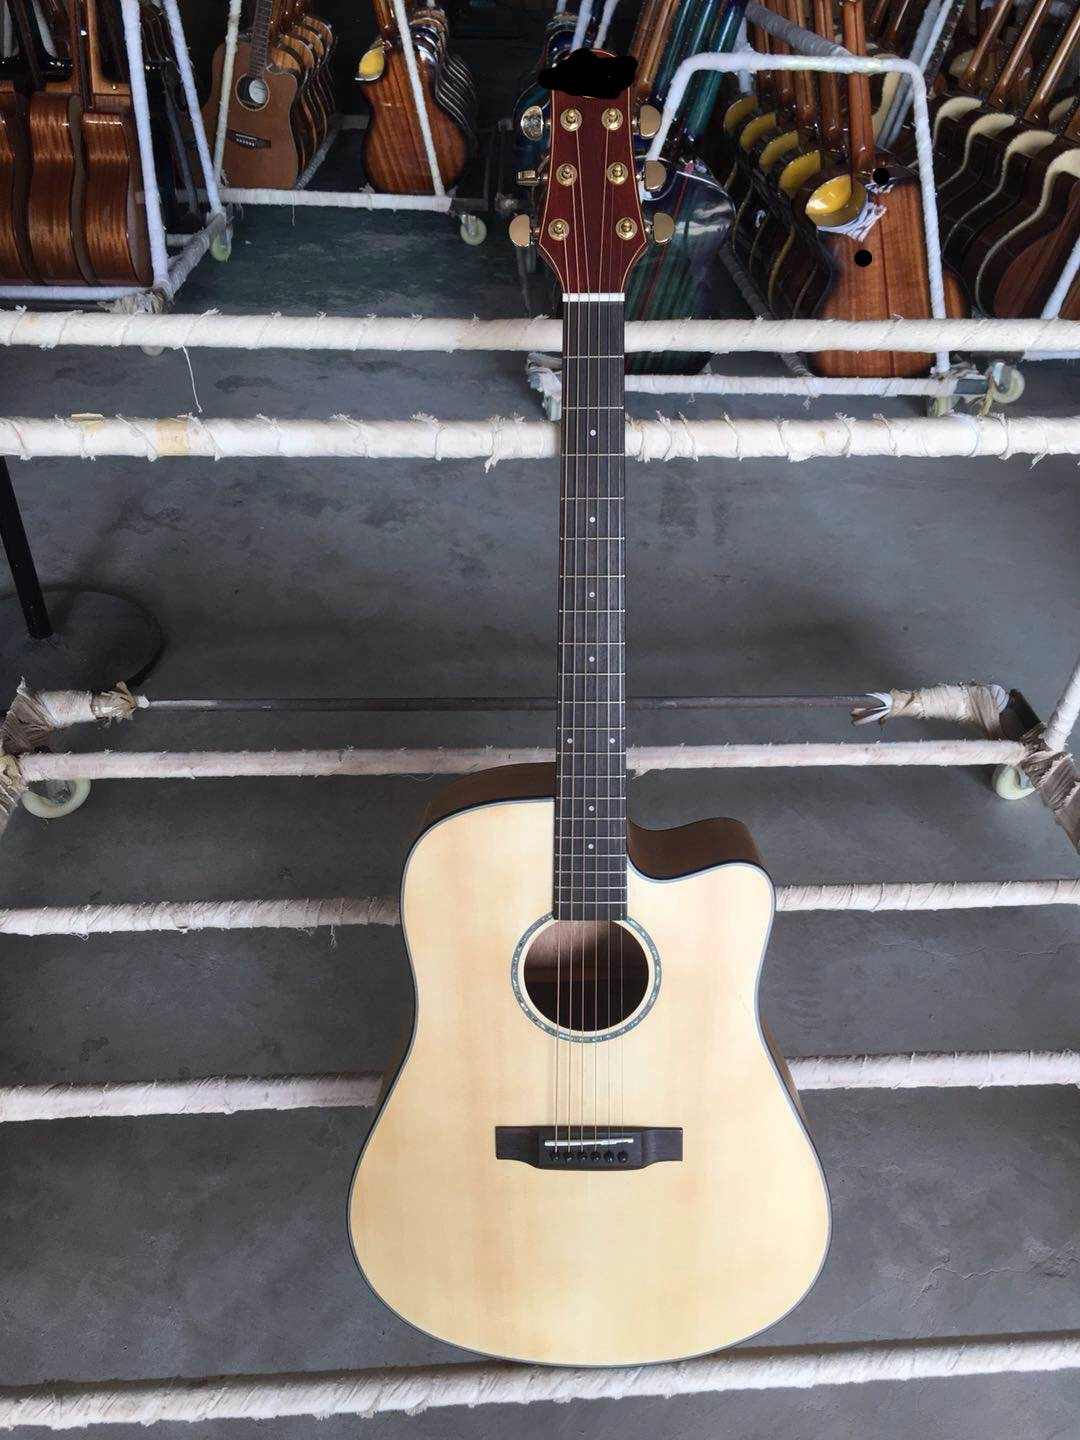 Qte совершенно новый дизайн низкий действий акустическая гитара с производителем цене Zero Fret акустической гитары